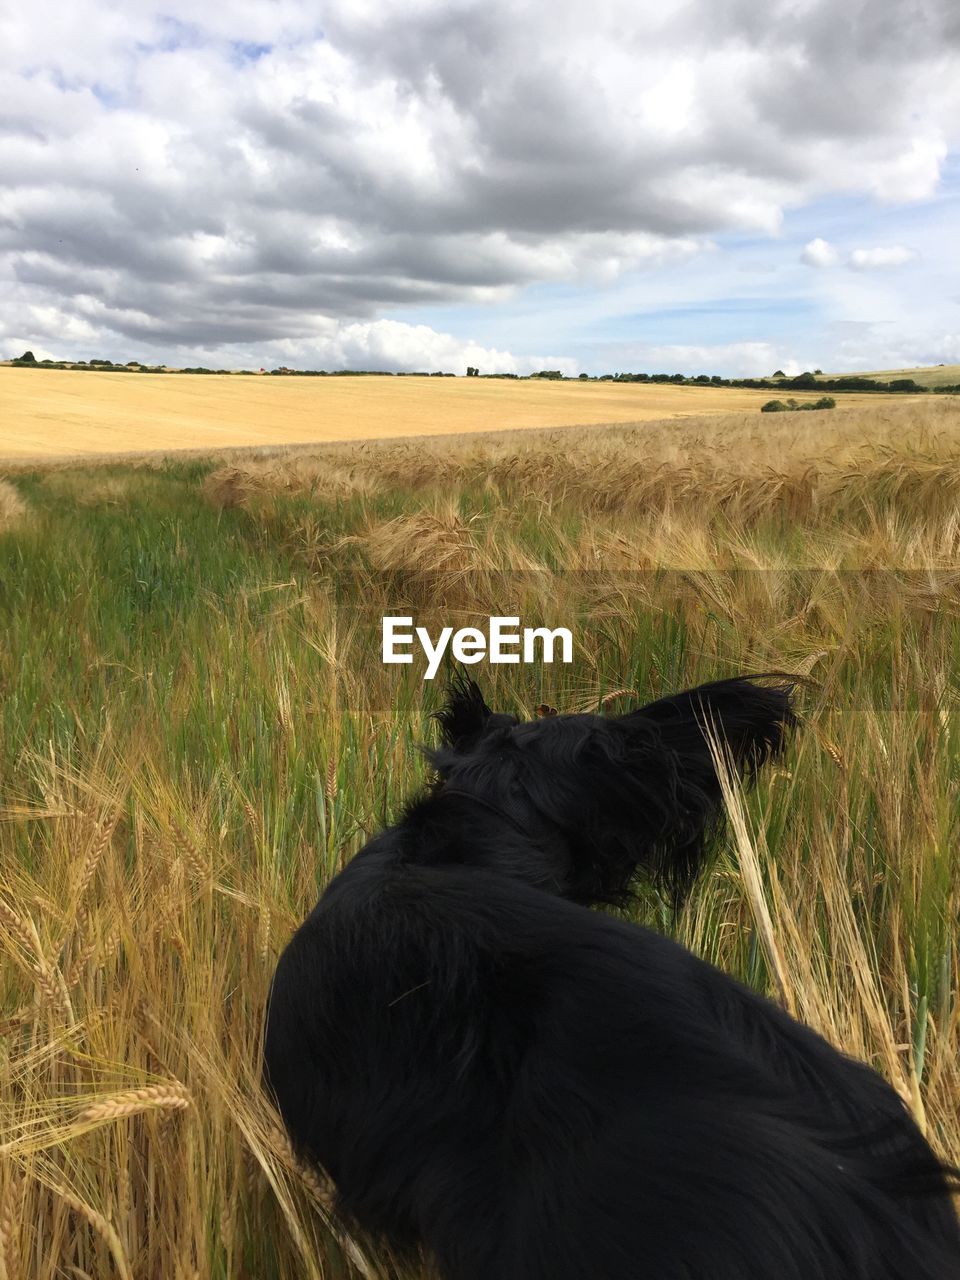 Black dog standing in grassy field